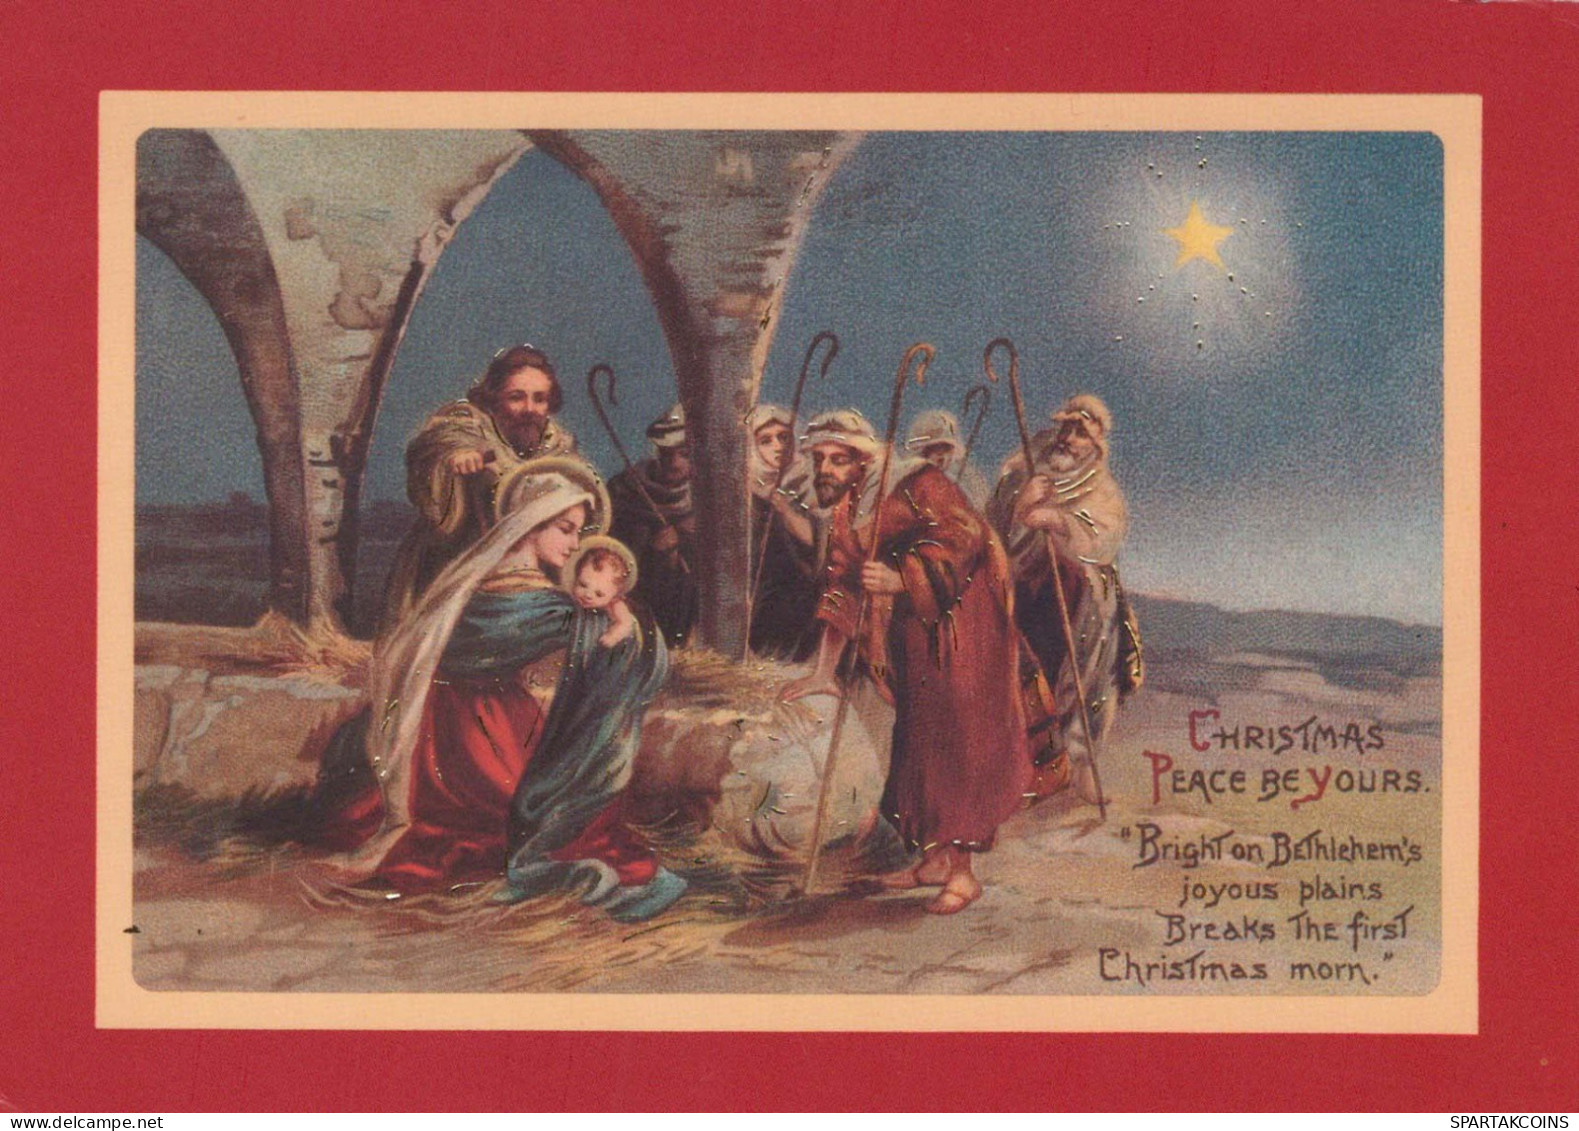 Virgen Mary Madonna Baby JESUS Christmas Religion Vintage Postcard CPSM #PBP655.GB - Virgen Maria Y Las Madonnas